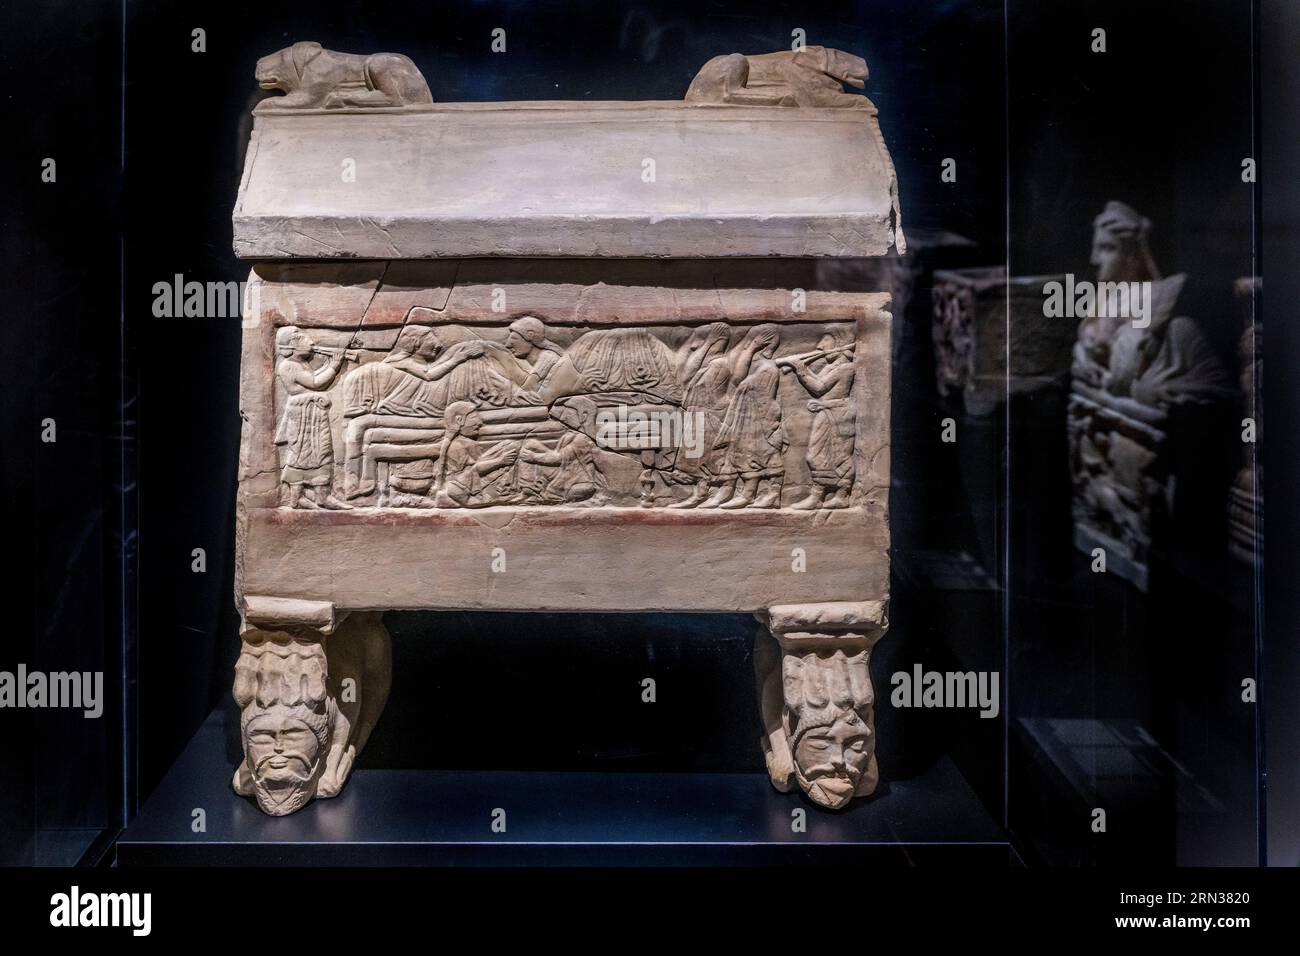 France, Gard, Nîmes, Musée de la Romanite, urne cinéraire étrusque achaïque en pierre (fin 6e siècle av. J.-C.)(exposition temporaire) Banque D'Images